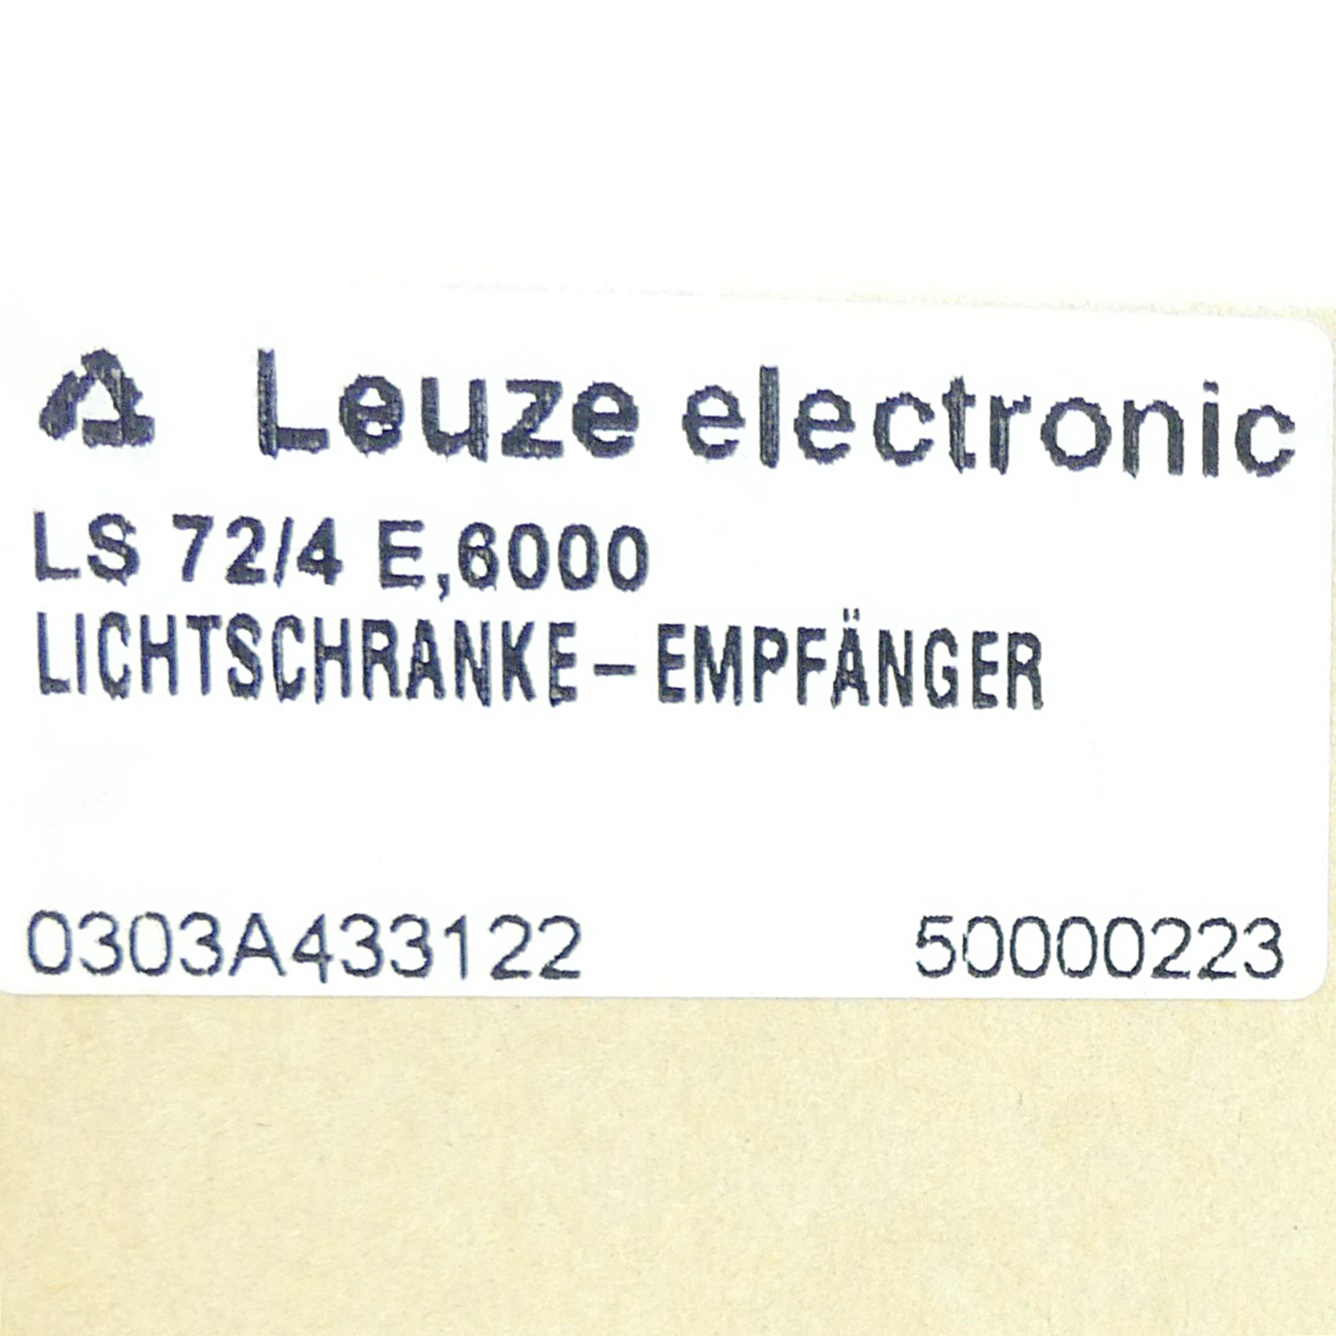 Lichtschranke LS 72/4 E 